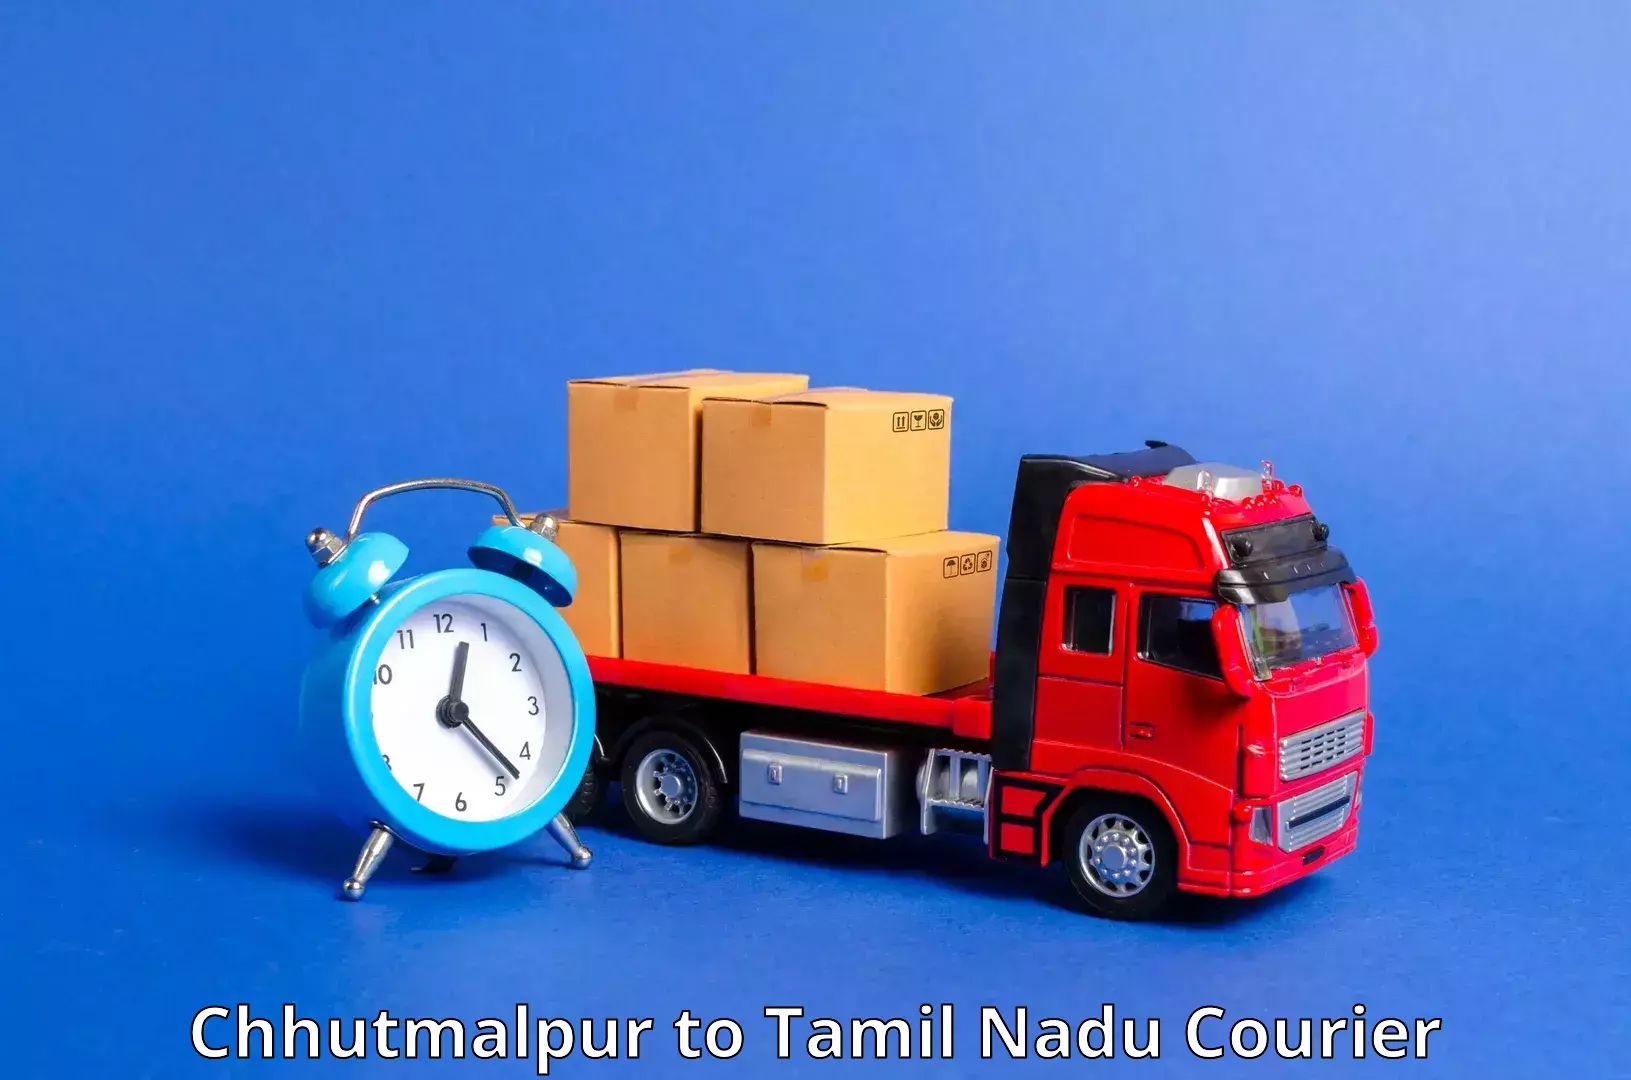 24-hour courier service Chhutmalpur to Kumbakonam